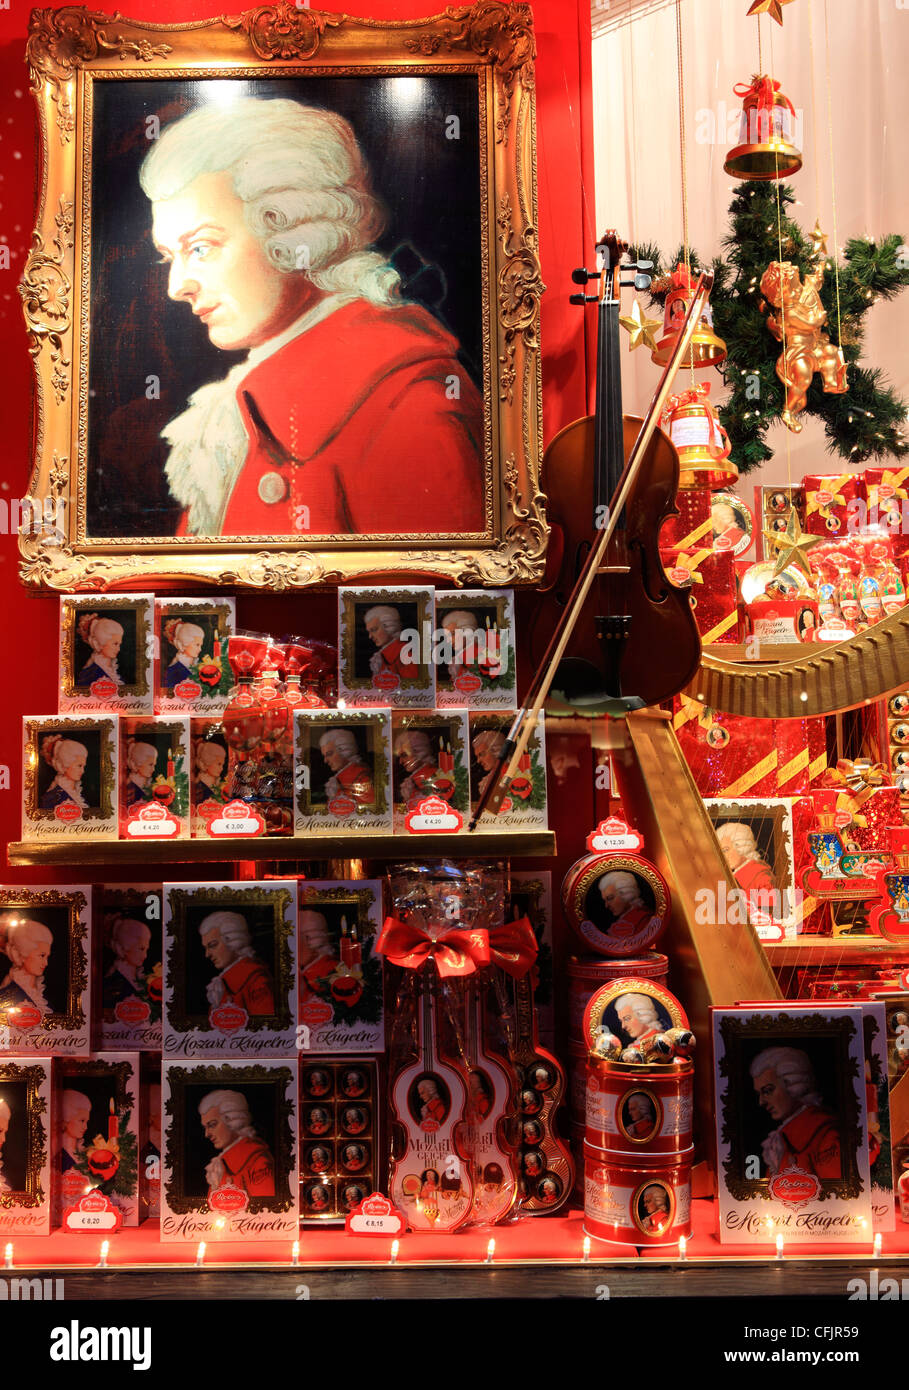 Weihnachten und Mozart Dekoration im Shop Fenster, Salzburg, Österreich, Europa Stockfoto